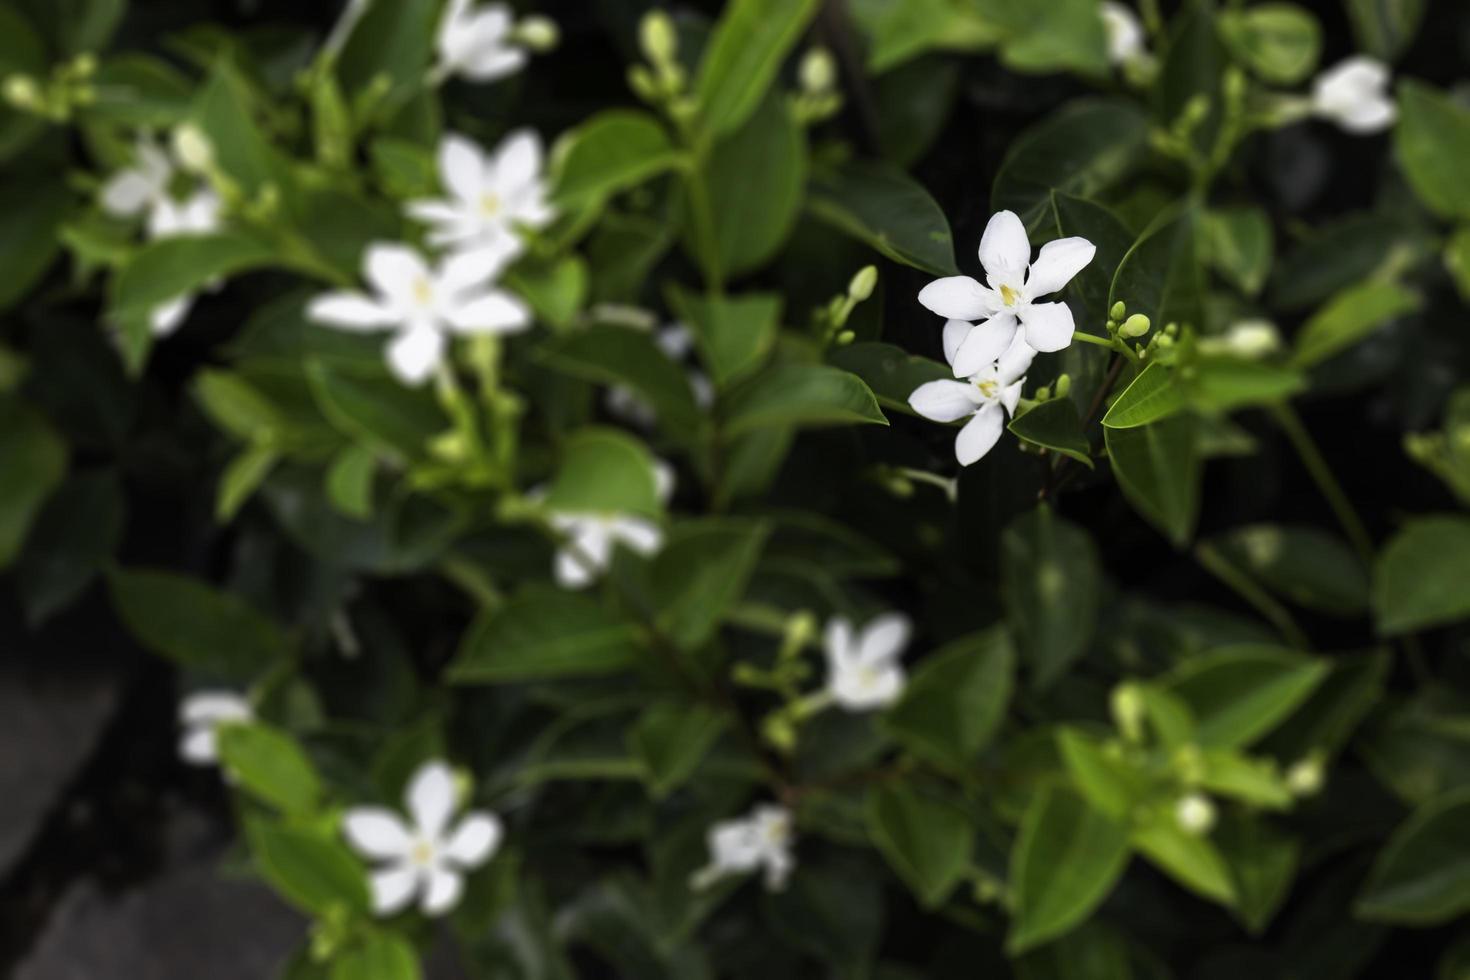 witte jasmijnbloemen foto